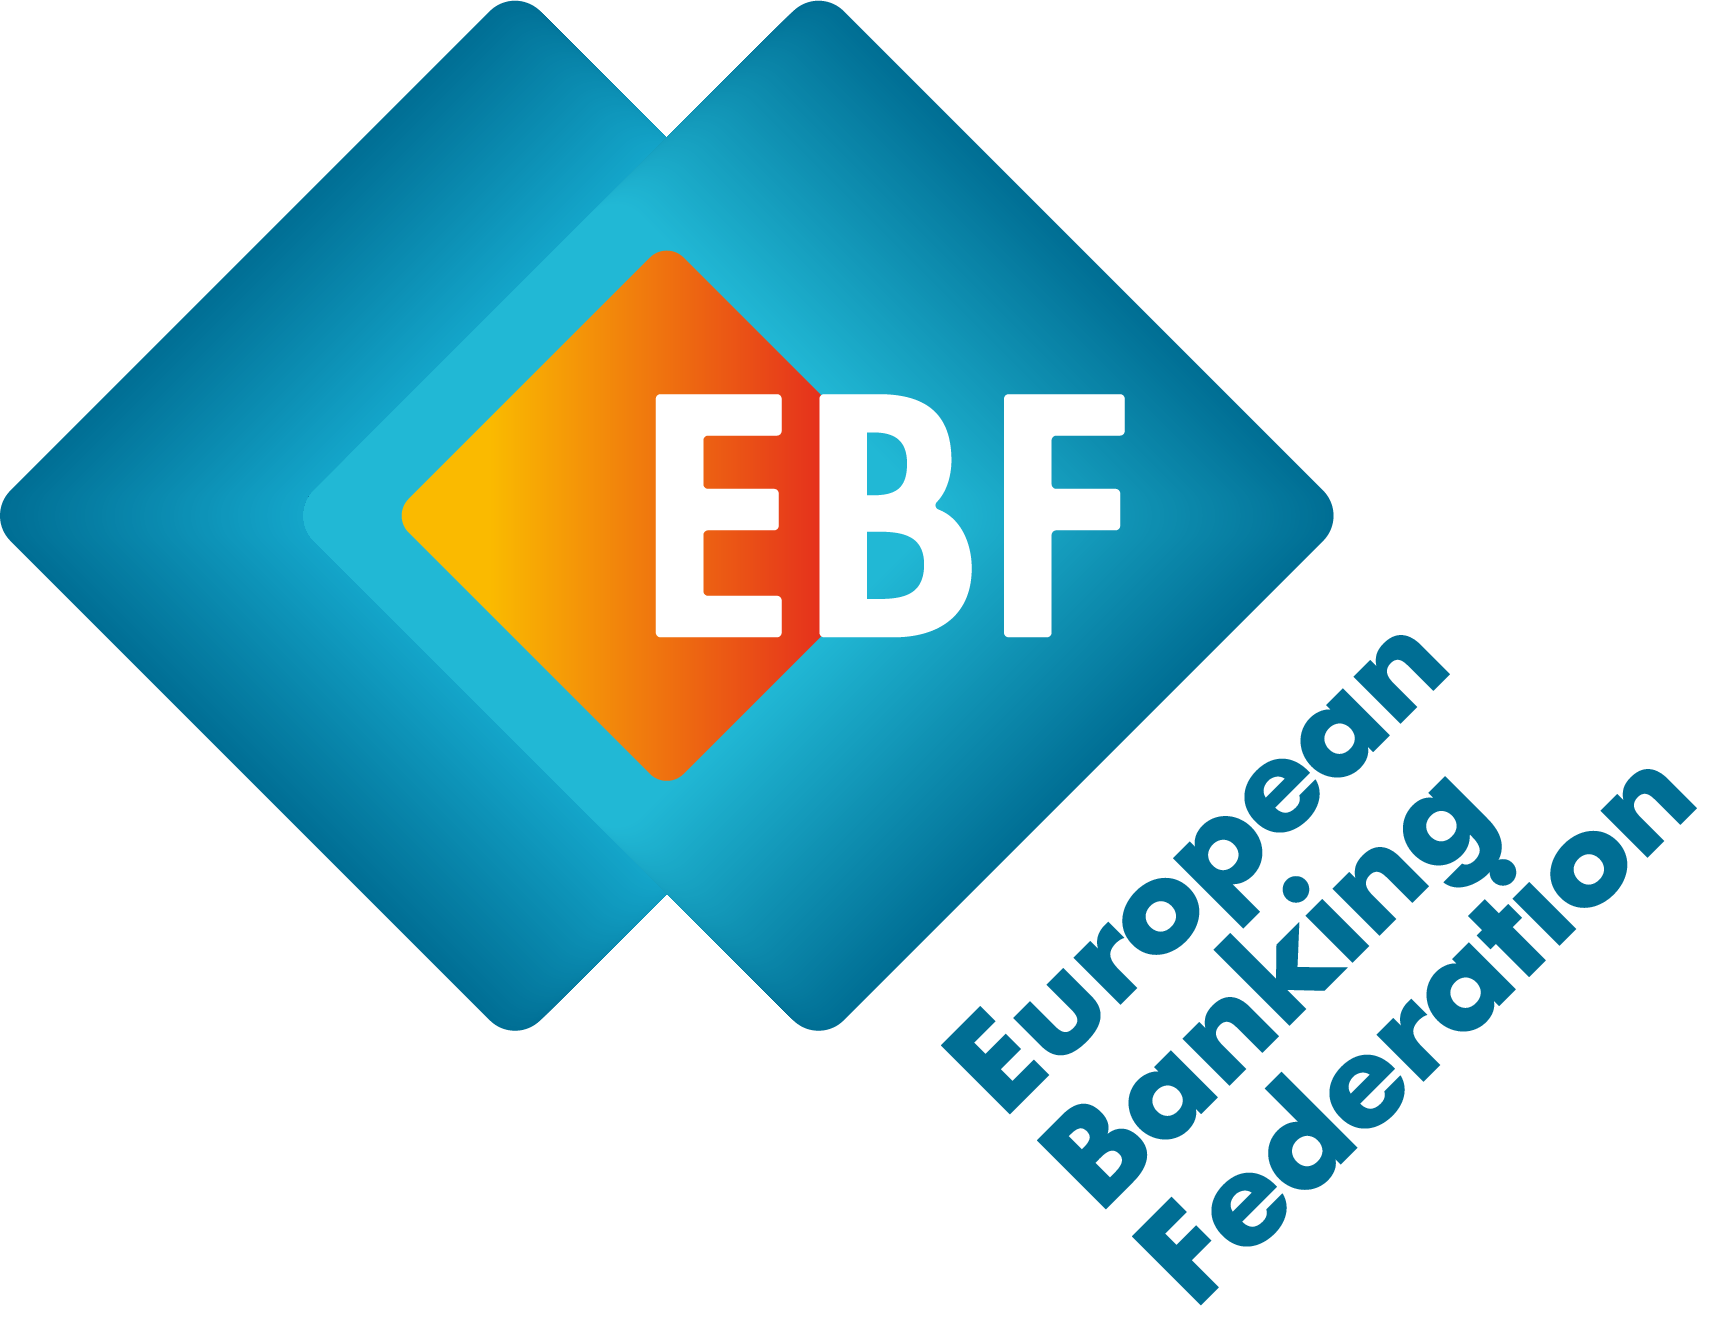 (c) Ebf.eu